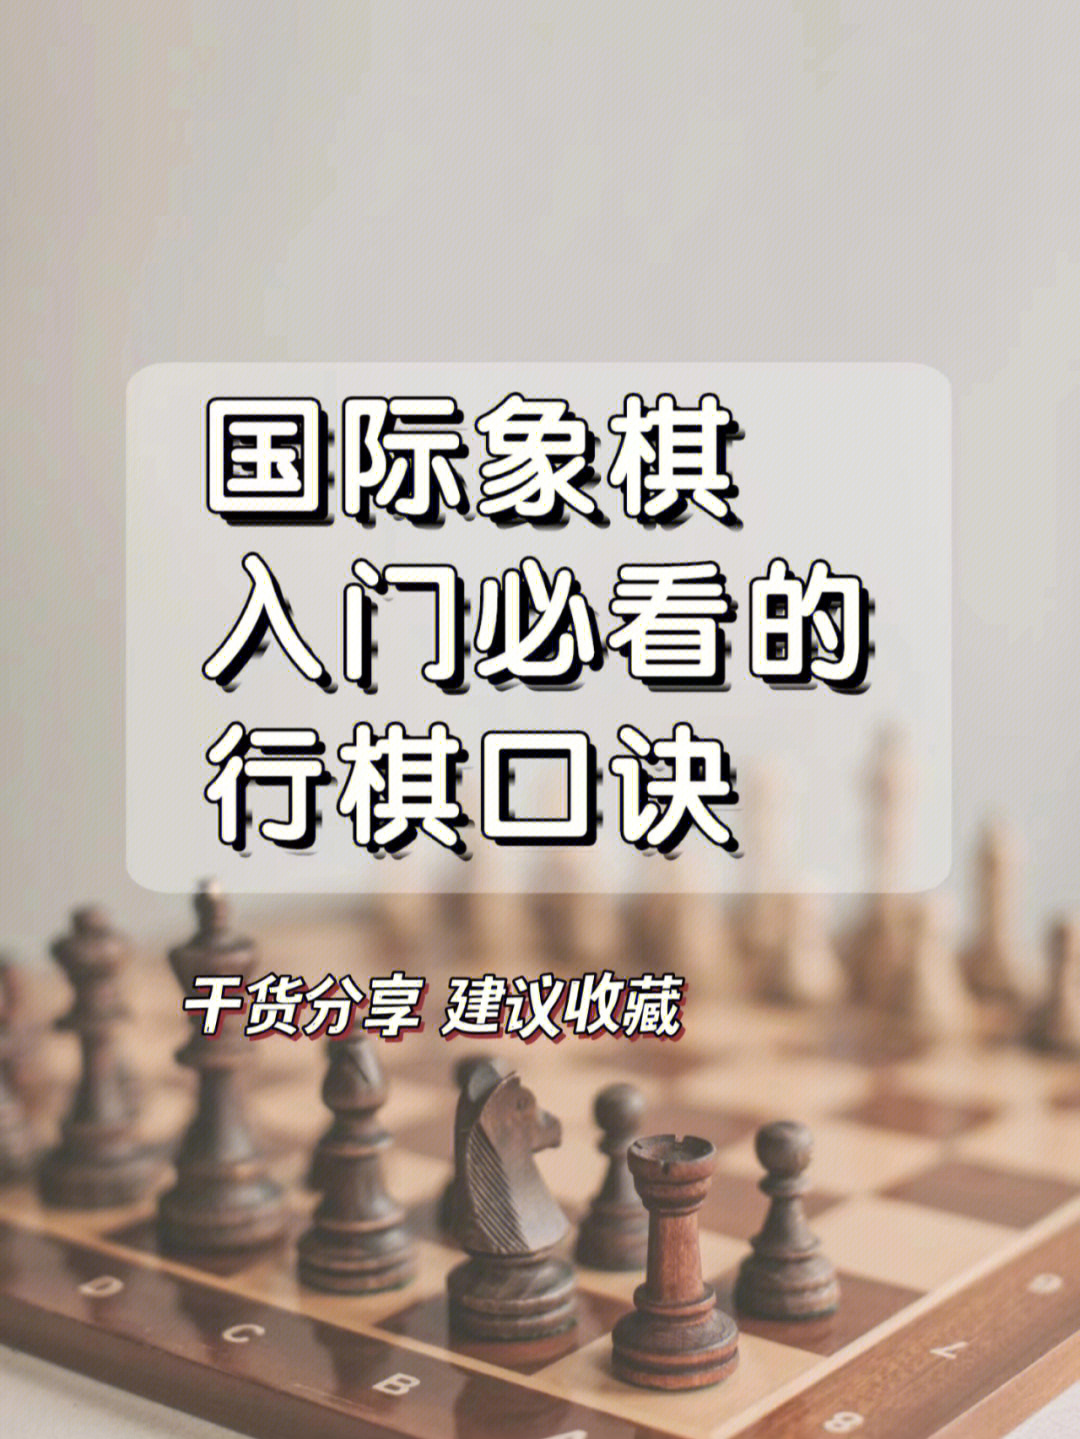 国际象棋的规则口诀图片